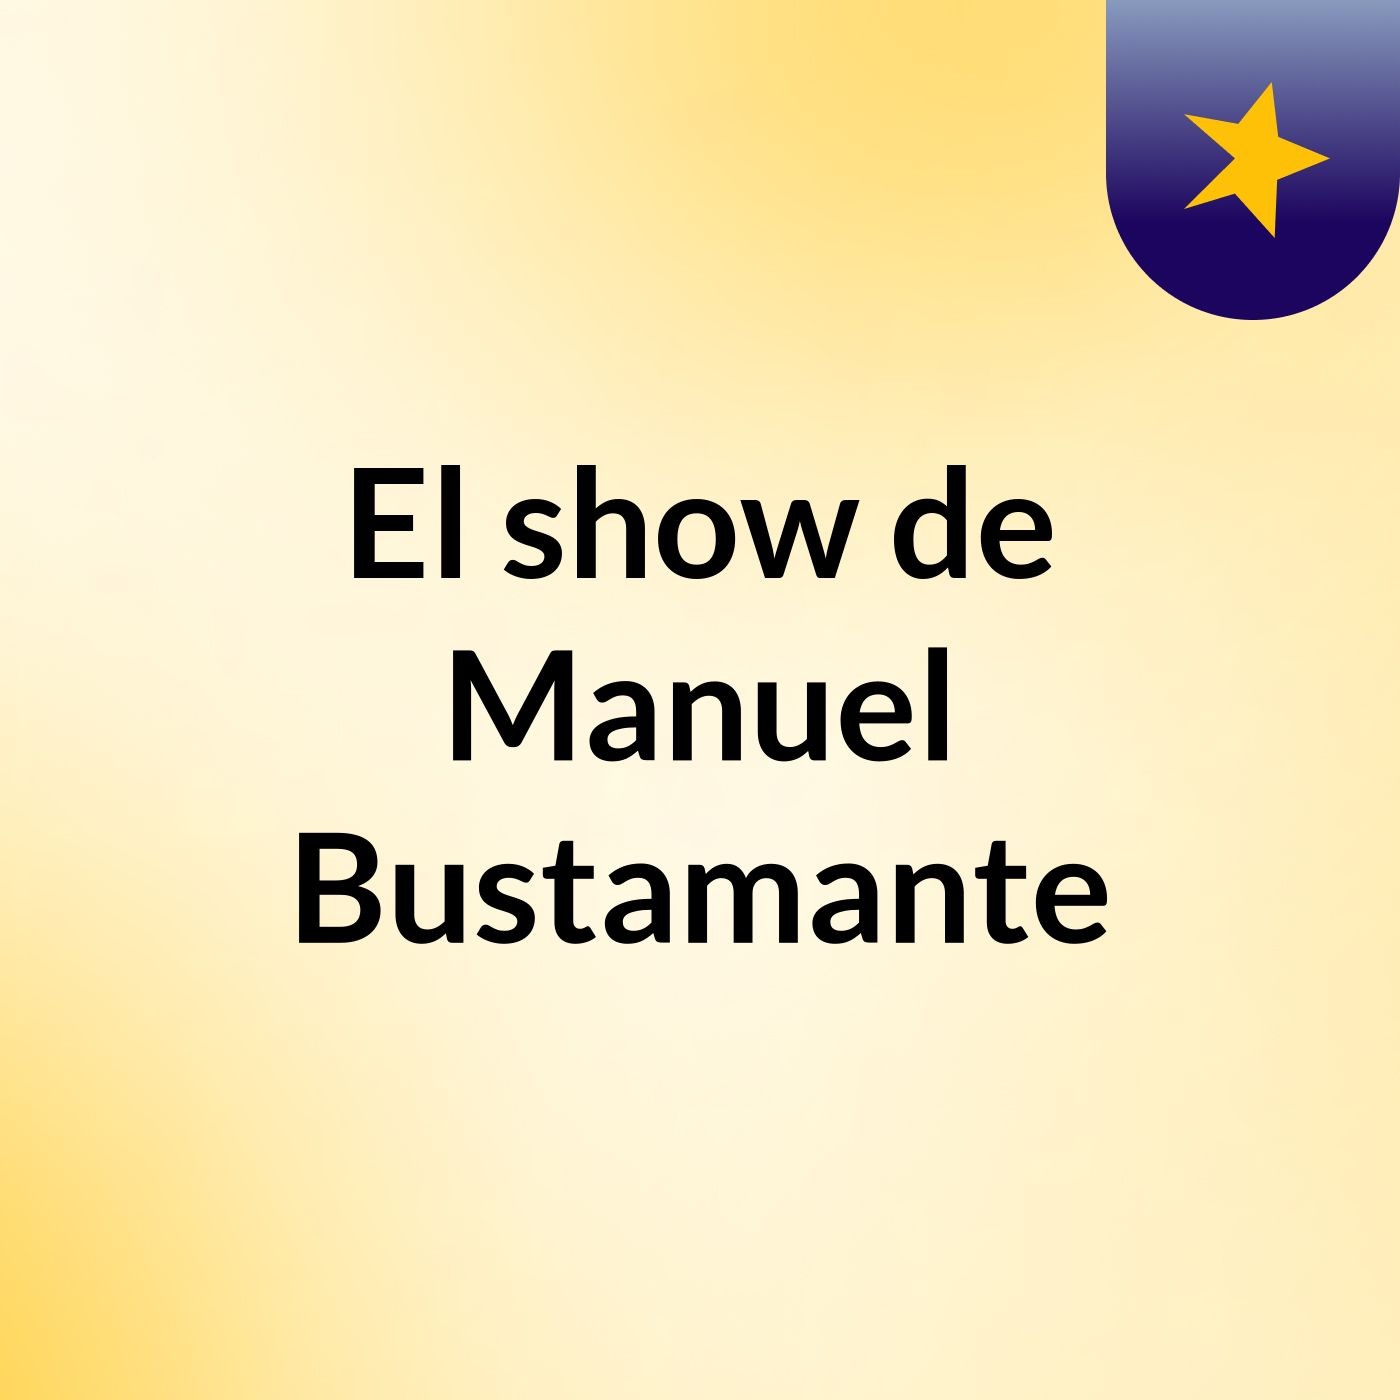 Episodio 2 - El show de Manuel Bustamante